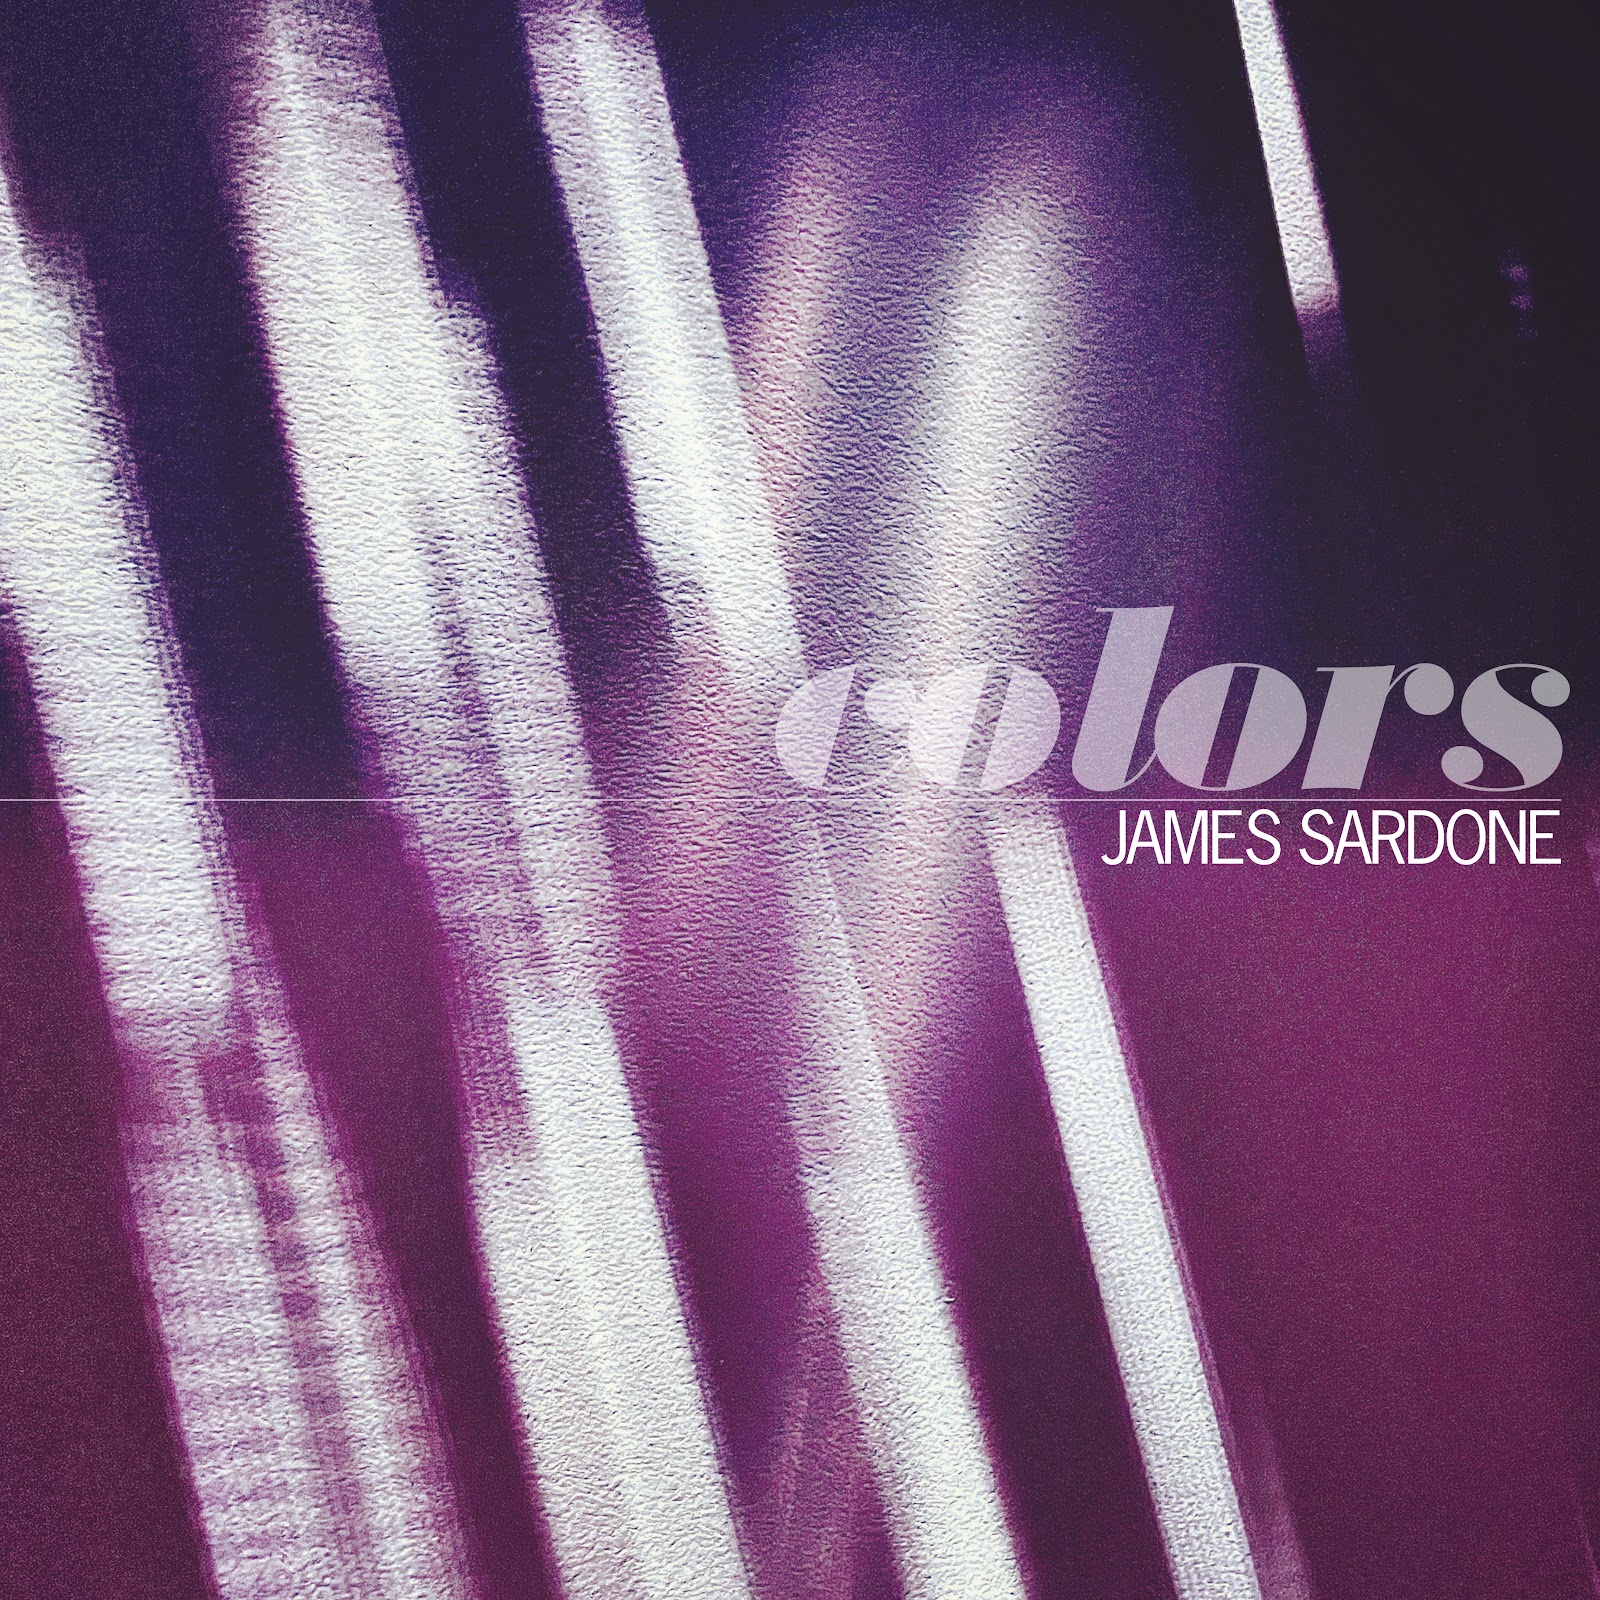 James Sardone ‘Colors’ album artwork